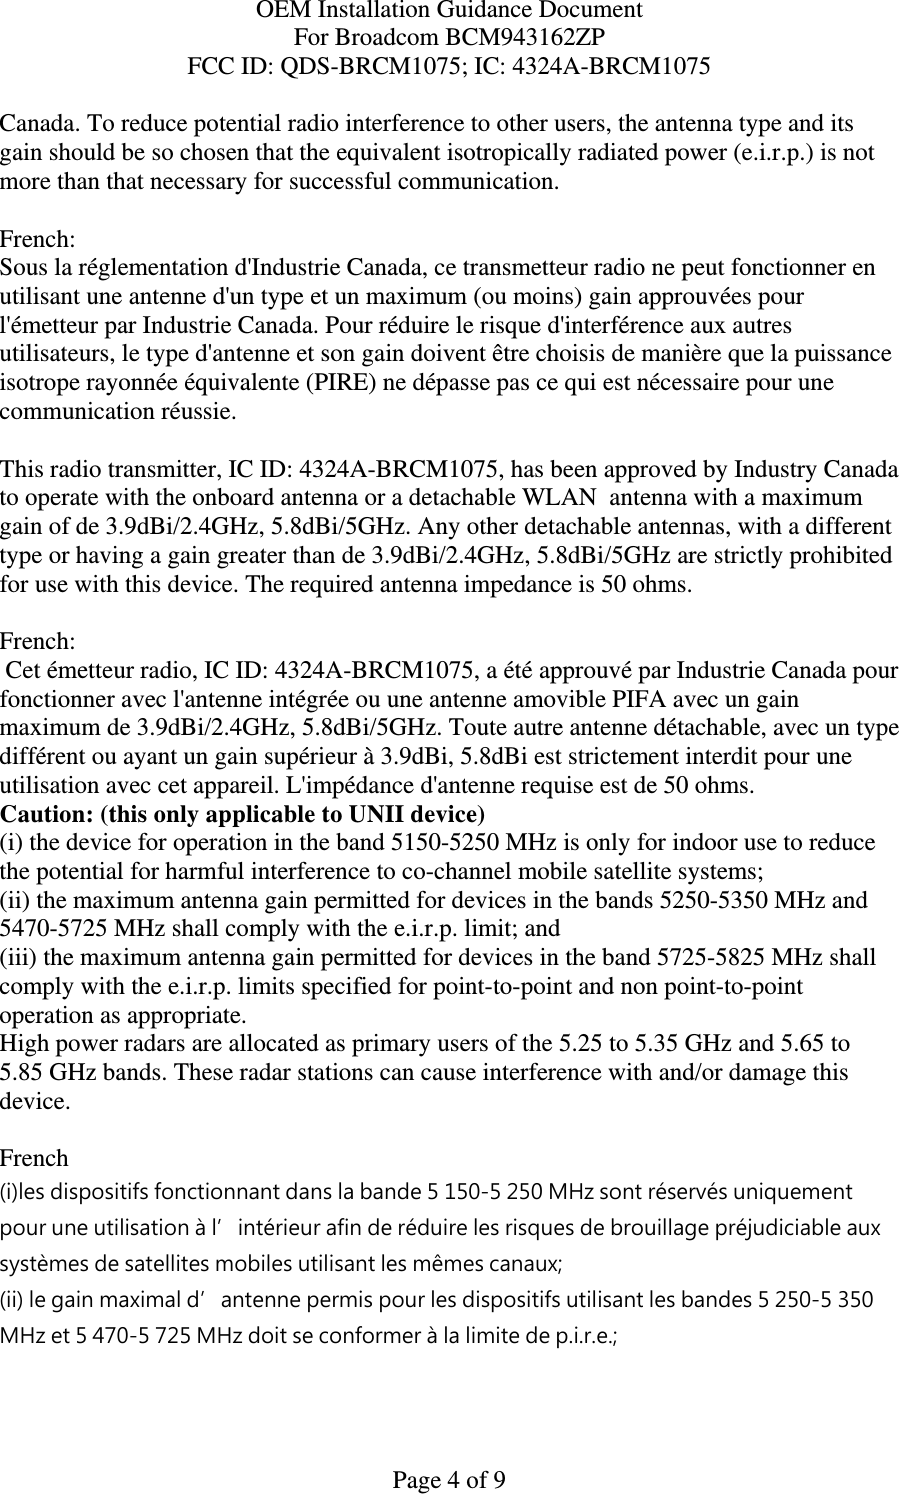 OEM Installation Guidance Document For Broadcom BCM943162ZP FCC ID: QDS-BRCM1075; IC: 4324A-BRCM1075  Page 4 of 9 Canada. To reduce potential radio interference to other users, the antenna type and its gain should be so chosen that the equivalent isotropically radiated power (e.i.r.p.) is not more than that necessary for successful communication.  French:  Sous la réglementation d&apos;Industrie Canada, ce transmetteur radio ne peut fonctionner en utilisant une antenne d&apos;un type et un maximum (ou moins) gain approuvées pour l&apos;émetteur par Industrie Canada. Pour réduire le risque d&apos;interférence aux autres utilisateurs, le type d&apos;antenne et son gain doivent être choisis de manière que la puissance isotrope rayonnée équivalente (PIRE) ne dépasse pas ce qui est nécessaire pour une communication réussie.  This radio transmitter, IC ID: 4324A-BRCM1075, has been approved by Industry Canada to operate with the onboard antenna or a detachable WLAN  antenna with a maximum gain of de 3.9dBi/2.4GHz, 5.8dBi/5GHz. Any other detachable antennas, with a different type or having a gain greater than de 3.9dBi/2.4GHz, 5.8dBi/5GHz are strictly prohibited for use with this device. The required antenna impedance is 50 ohms.  French:   Cet émetteur radio, IC ID: 4324A-BRCM1075, a été approuvé par Industrie Canada pour fonctionner avec l&apos;antenne intégrée ou une antenne amovible PIFA avec un gain maximum de 3.9dBi/2.4GHz, 5.8dBi/5GHz. Toute autre antenne détachable, avec un type différent ou ayant un gain supérieur à 3.9dBi, 5.8dBi est strictement interdit pour une utilisation avec cet appareil. L&apos;impédance d&apos;antenne requise est de 50 ohms. Caution: (this only applicable to UNII device) (i) the device for operation in the band 5150-5250 MHz is only for indoor use to reduce the potential for harmful interference to co-channel mobile satellite systems; (ii) the maximum antenna gain permitted for devices in the bands 5250-5350 MHz and 5470-5725 MHz shall comply with the e.i.r.p. limit; and (iii) the maximum antenna gain permitted for devices in the band 5725-5825 MHz shall comply with the e.i.r.p. limits specified for point-to-point and non point-to-point operation as appropriate. High power radars are allocated as primary users of the 5.25 to 5.35 GHz and 5.65 to 5.85 GHz bands. These radar stations can cause interference with and/or damage this device.  French  (i)les dispositifs fonctionnant dans la bande 5 150-5 250 MHz sont réservés uniquement pour une utilisation à l’intérieur afin de réduire les risques de brouillage préjudiciable aux systèmes de satellites mobiles utilisant les mêmes canaux; (ii) le gain maximal d’antenne permis pour les dispositifs utilisant les bandes 5 250-5 350 MHz et 5 470-5 725 MHz doit se conformer à la limite de p.i.r.e.; 